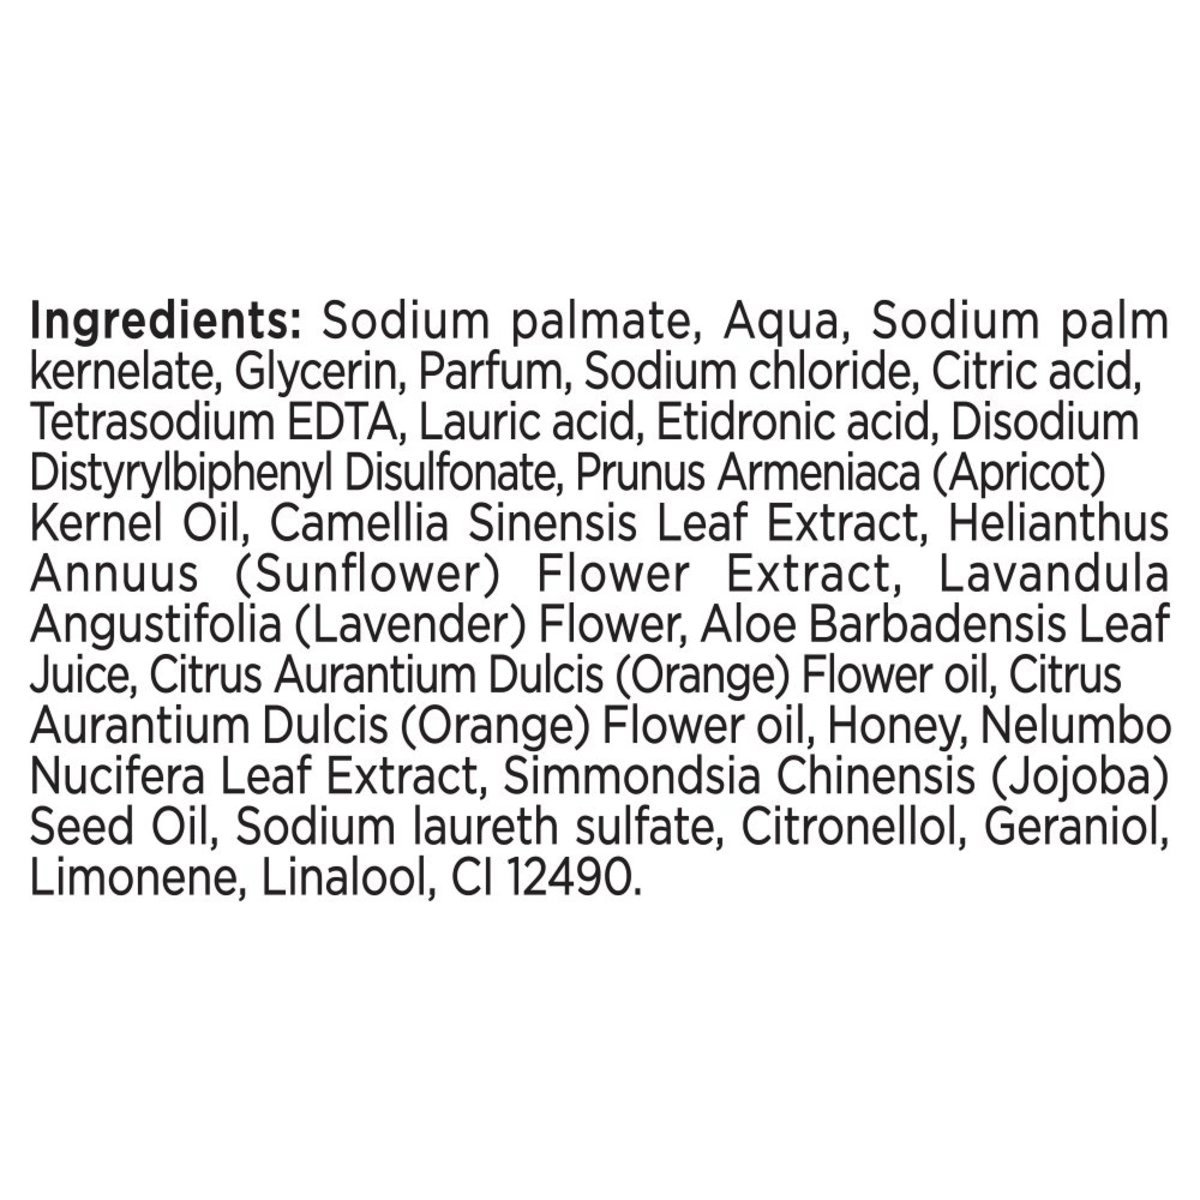 Lux Botanicals Glowing Skin Bar Soap Lotus & Honey 170 g